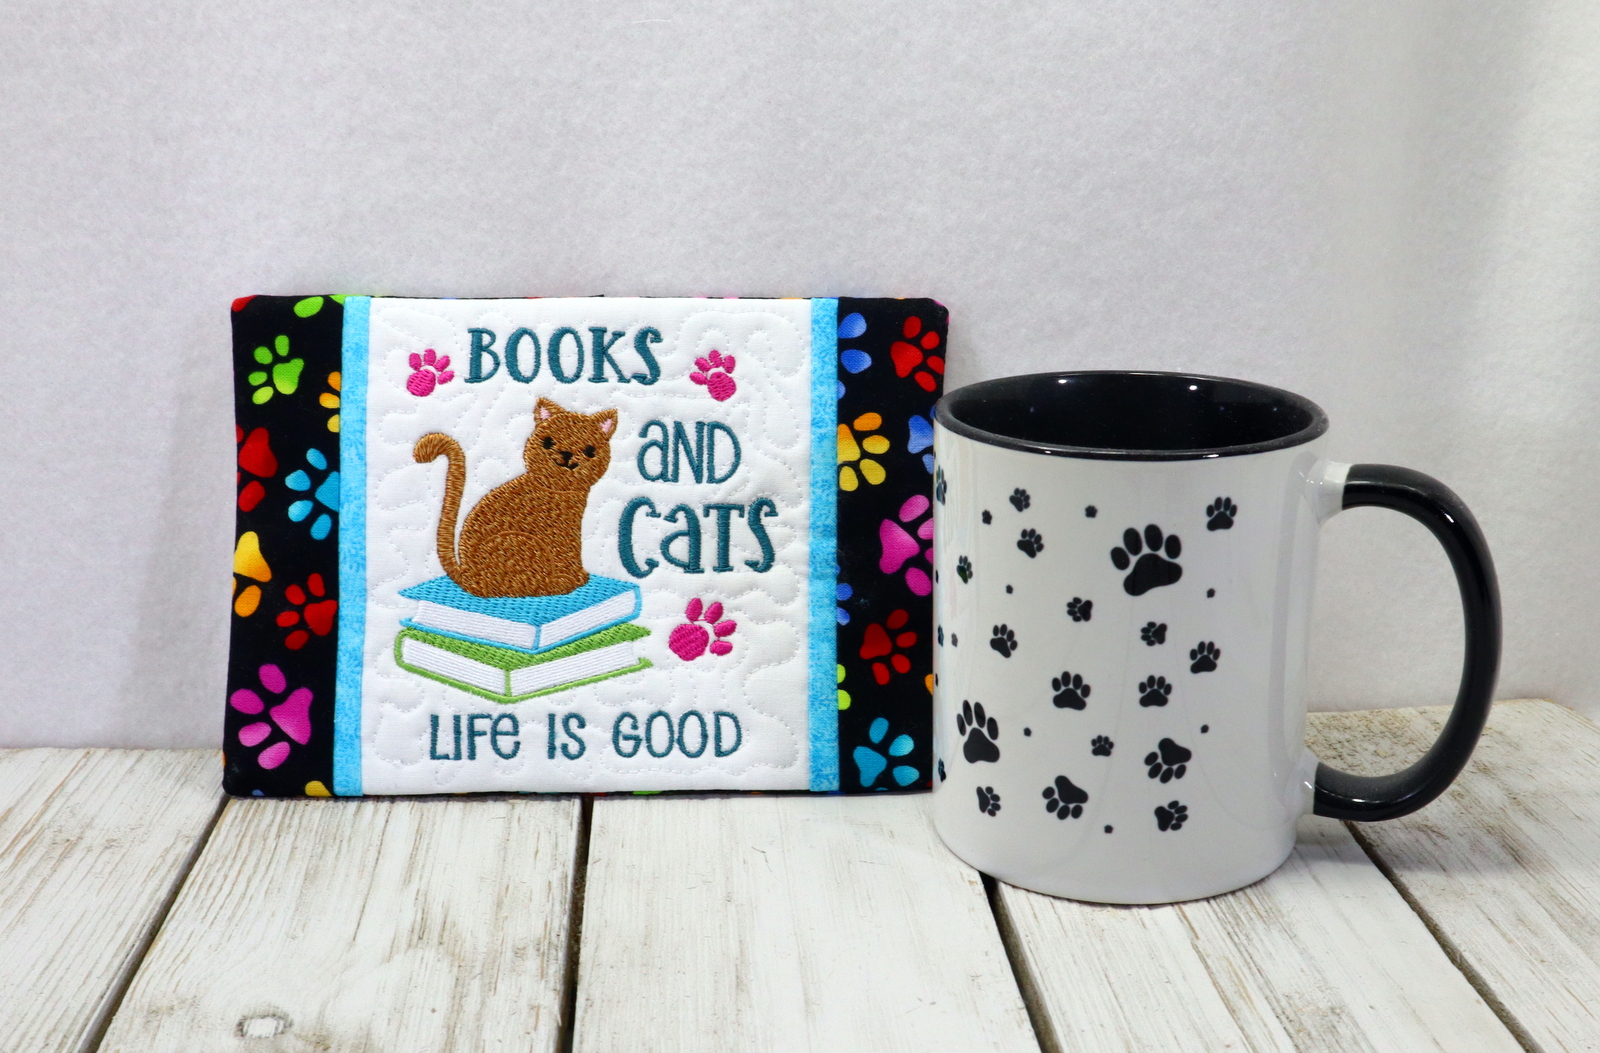 Books and Cats Mug Rug-5